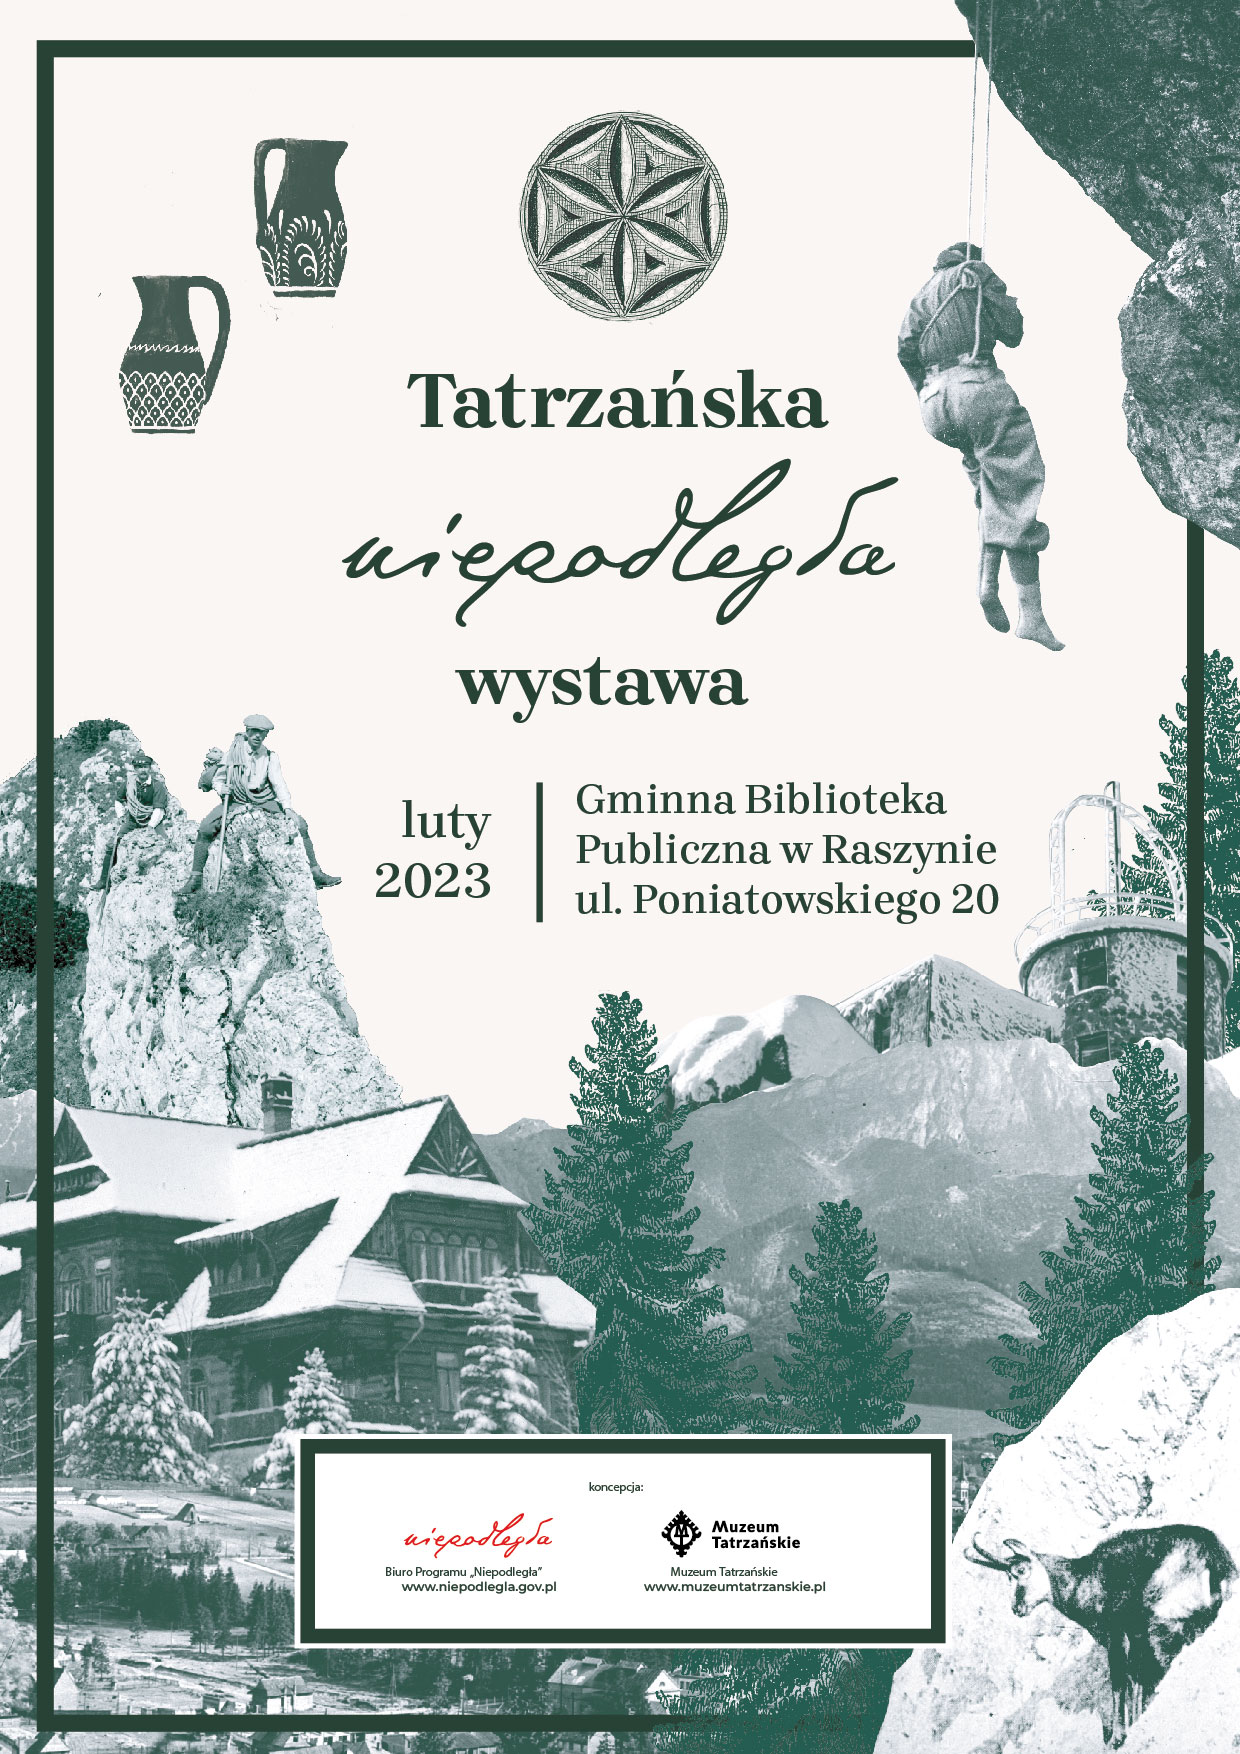 Tatrzańska Niepodległa - plakat do wystawy